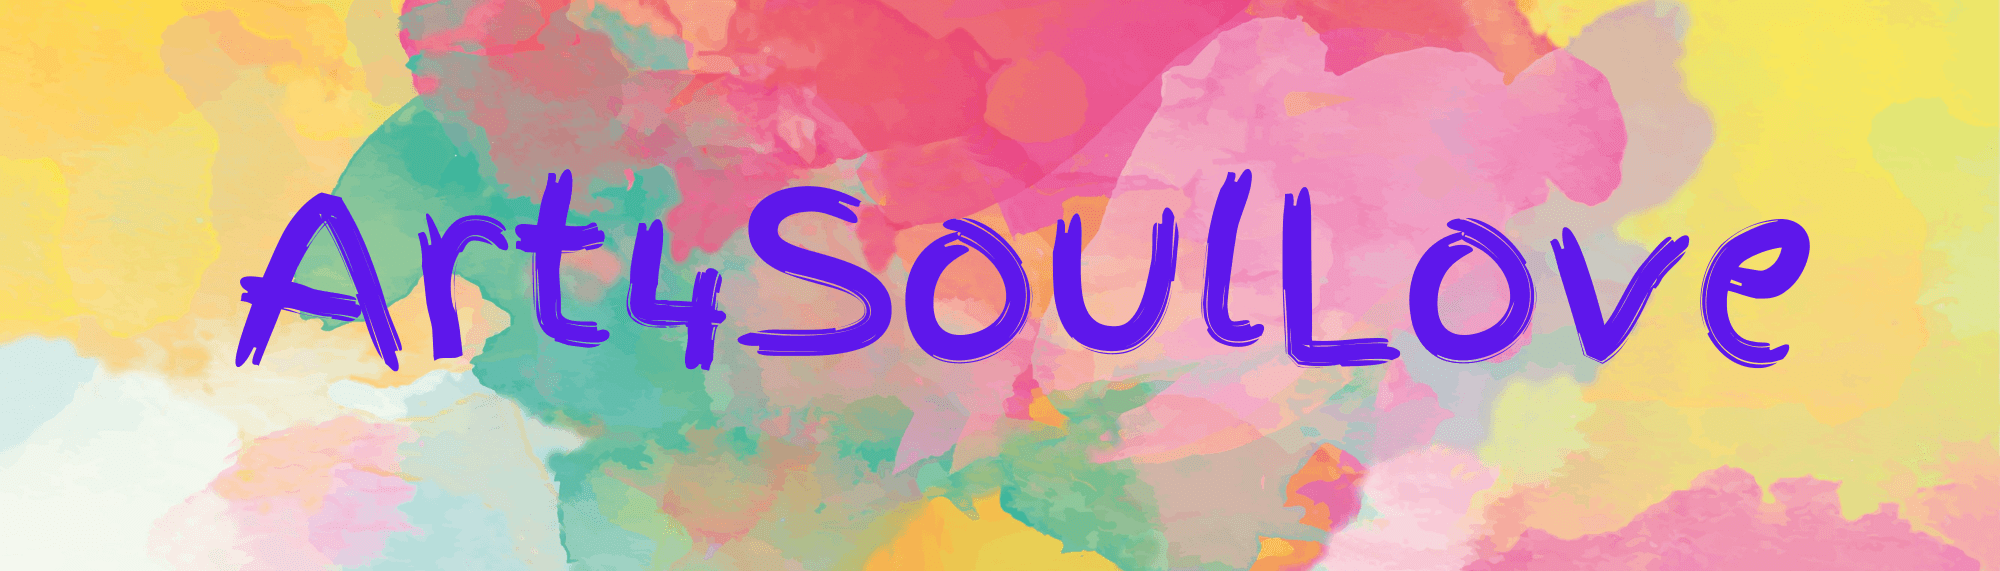 Art4SoulLove banner